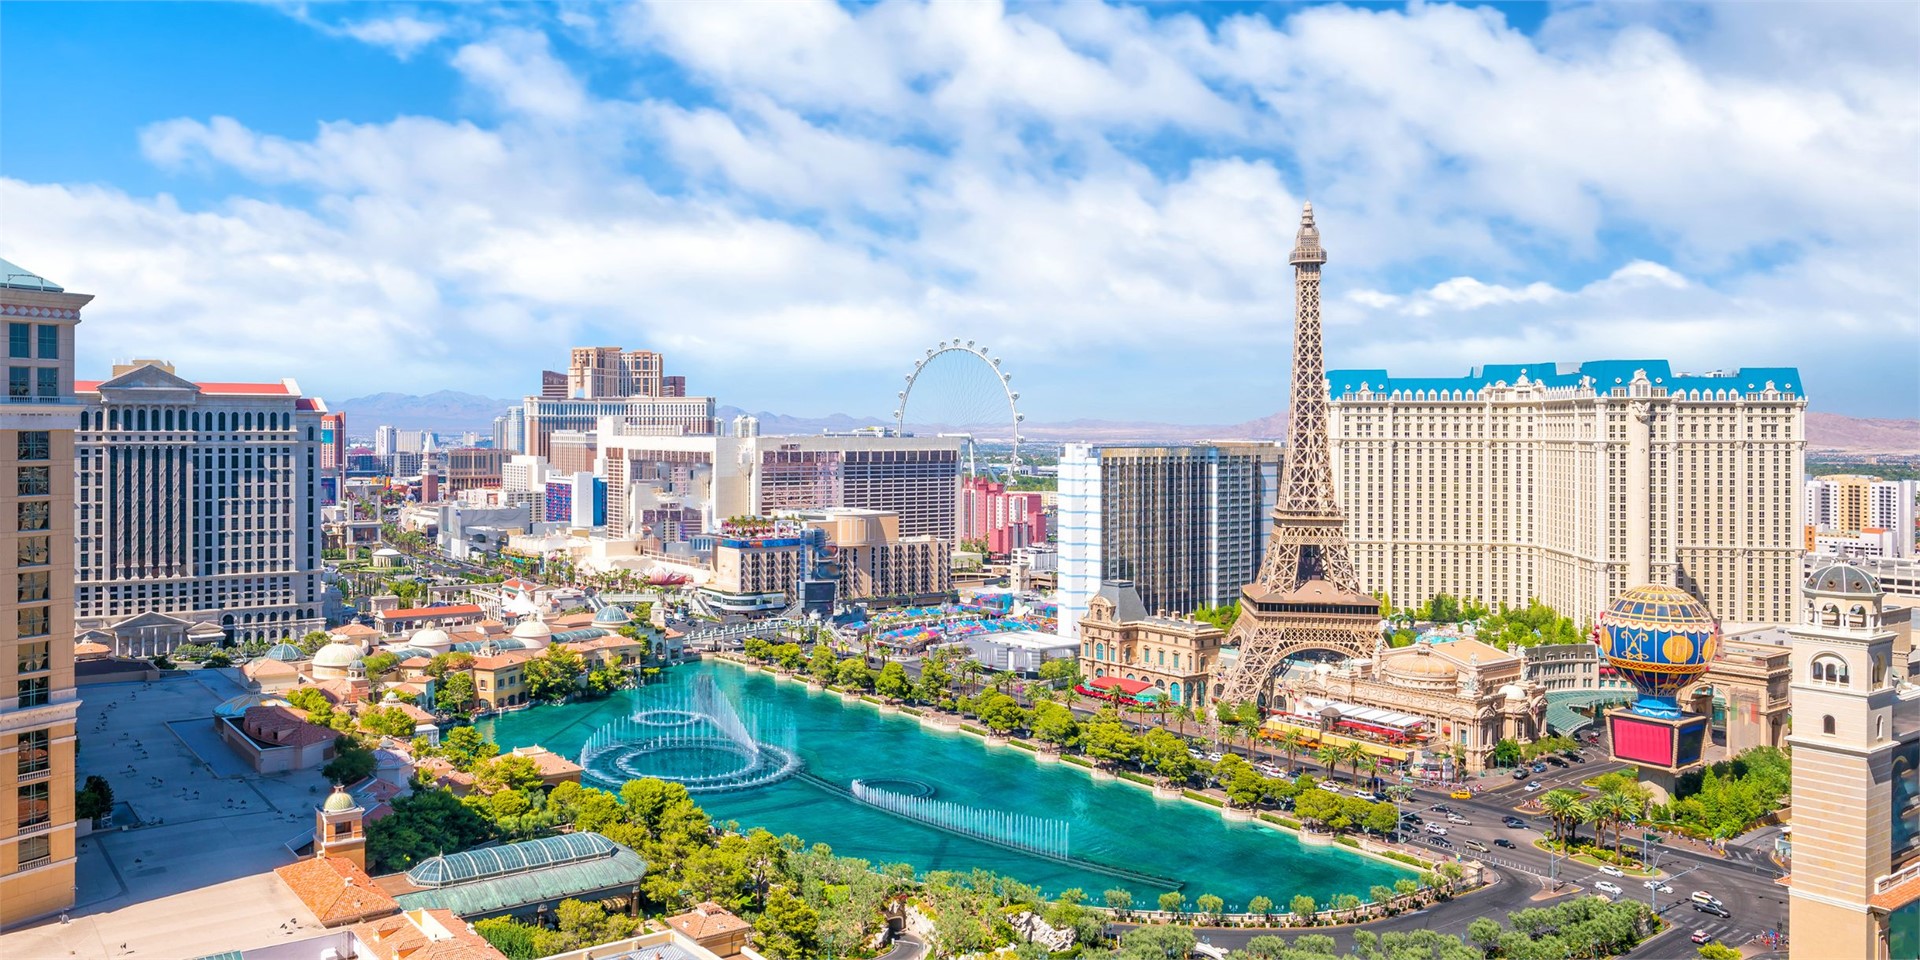 Buche Deine Reise zum Spielerparadies in Las Vegas
